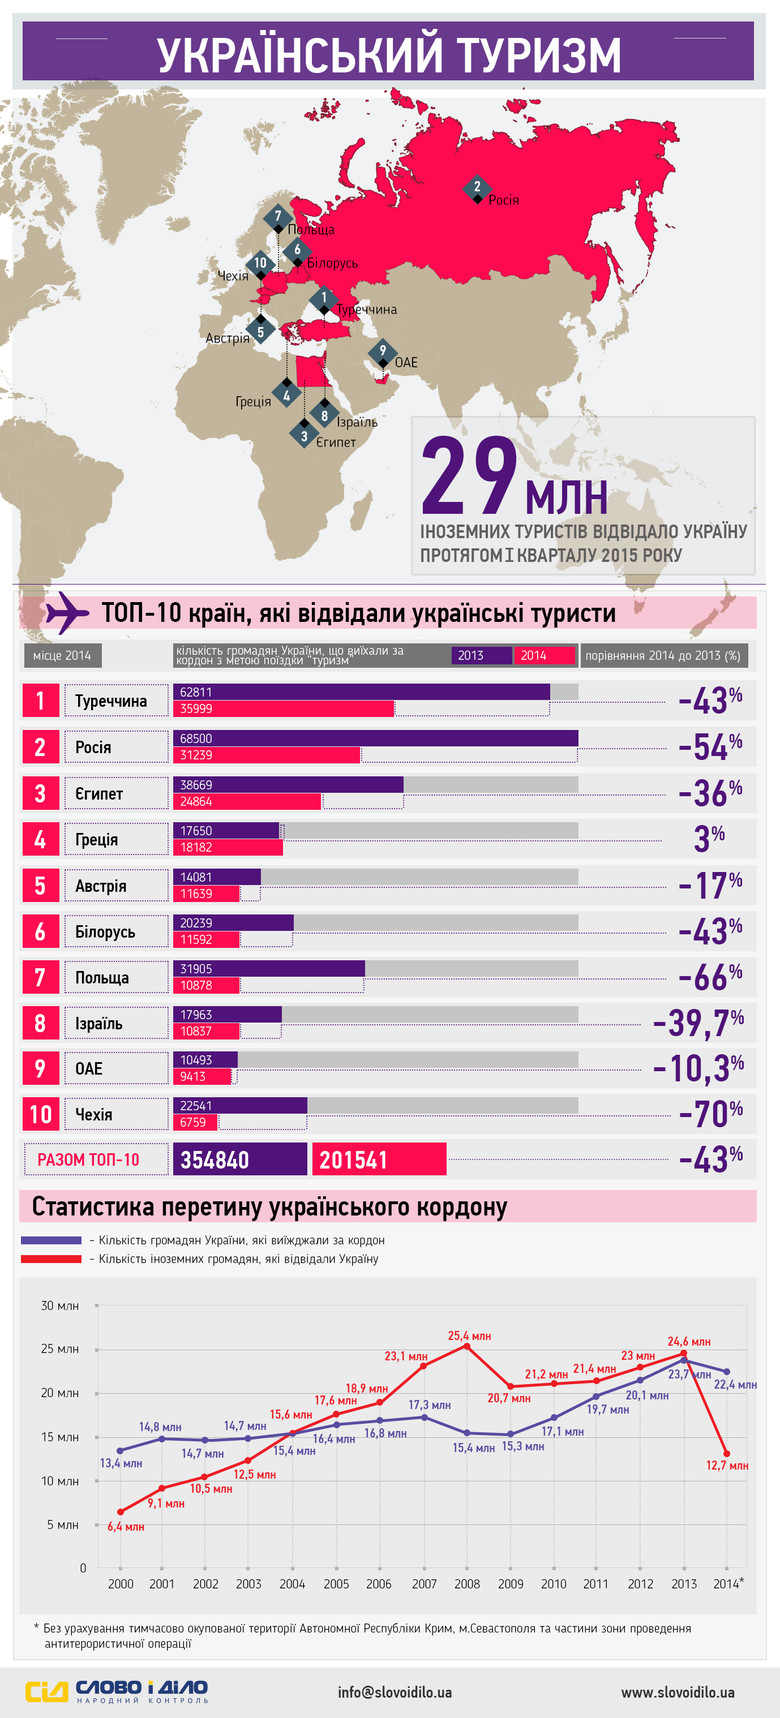 У 2013 році кількість громадян України, які виїхали за кордон з метою поїздки «туризм» перевалила відмітку у 350 тисяч осіб. А от 2014 рік ознаменувався суттєвим зменшенням відвідувань закордону українцями.